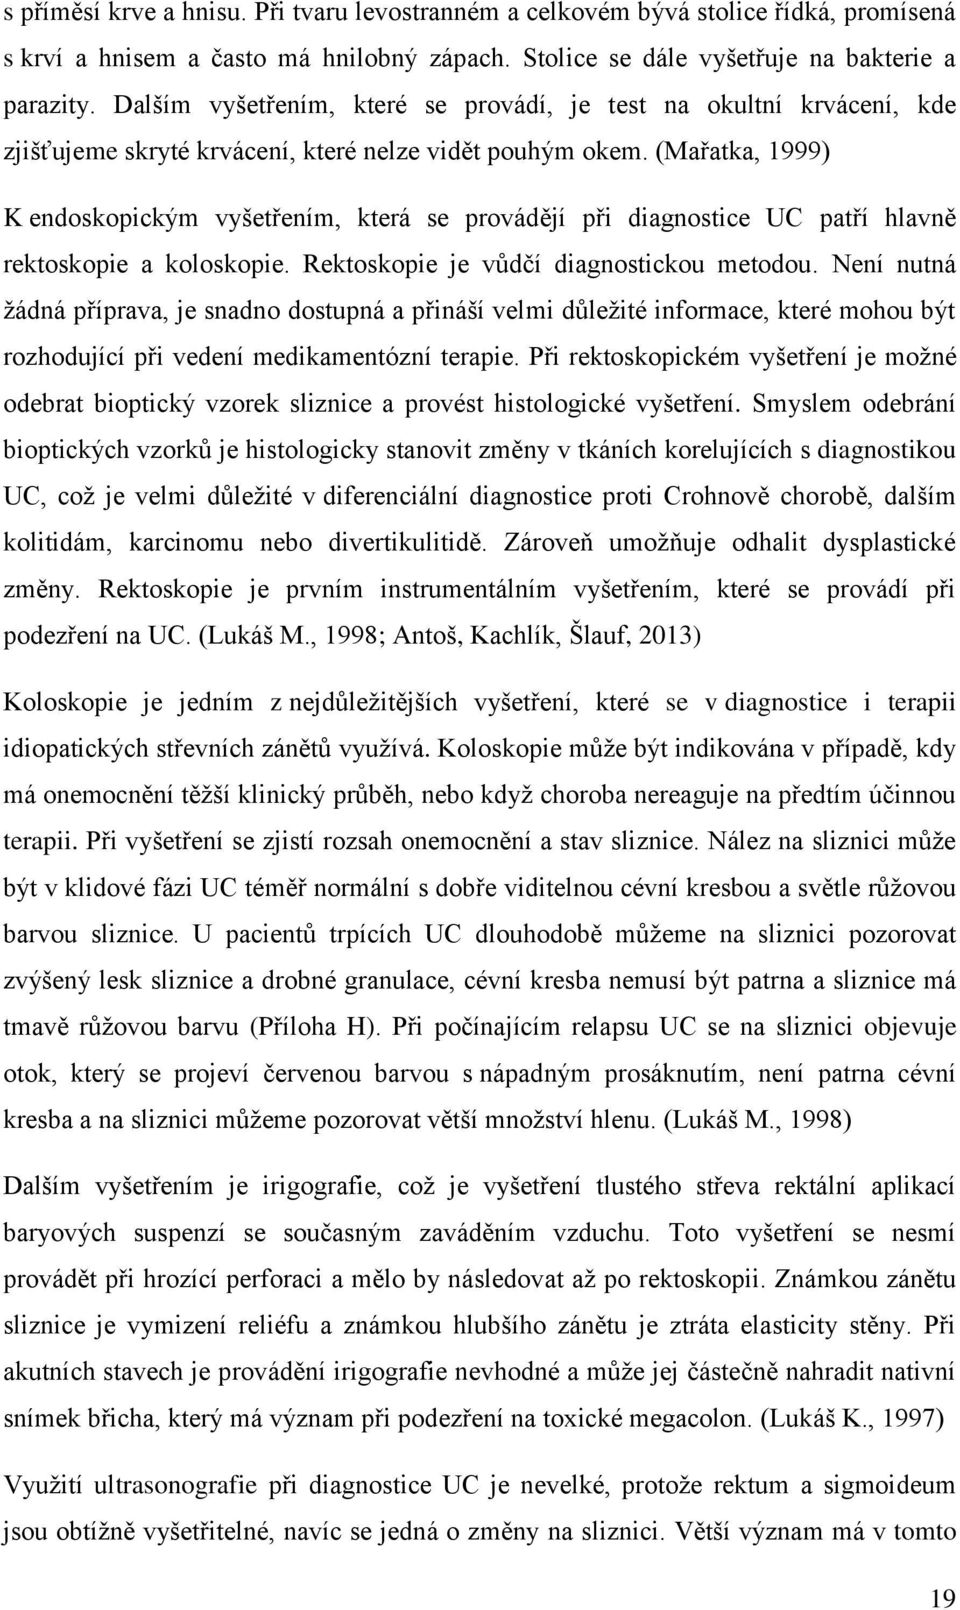 VYSOKÁ ŠKOLA POLYTECHNICKÁ JIHLAVA. Kvalita života pacientů s colitis  ulcerosa - PDF Free Download